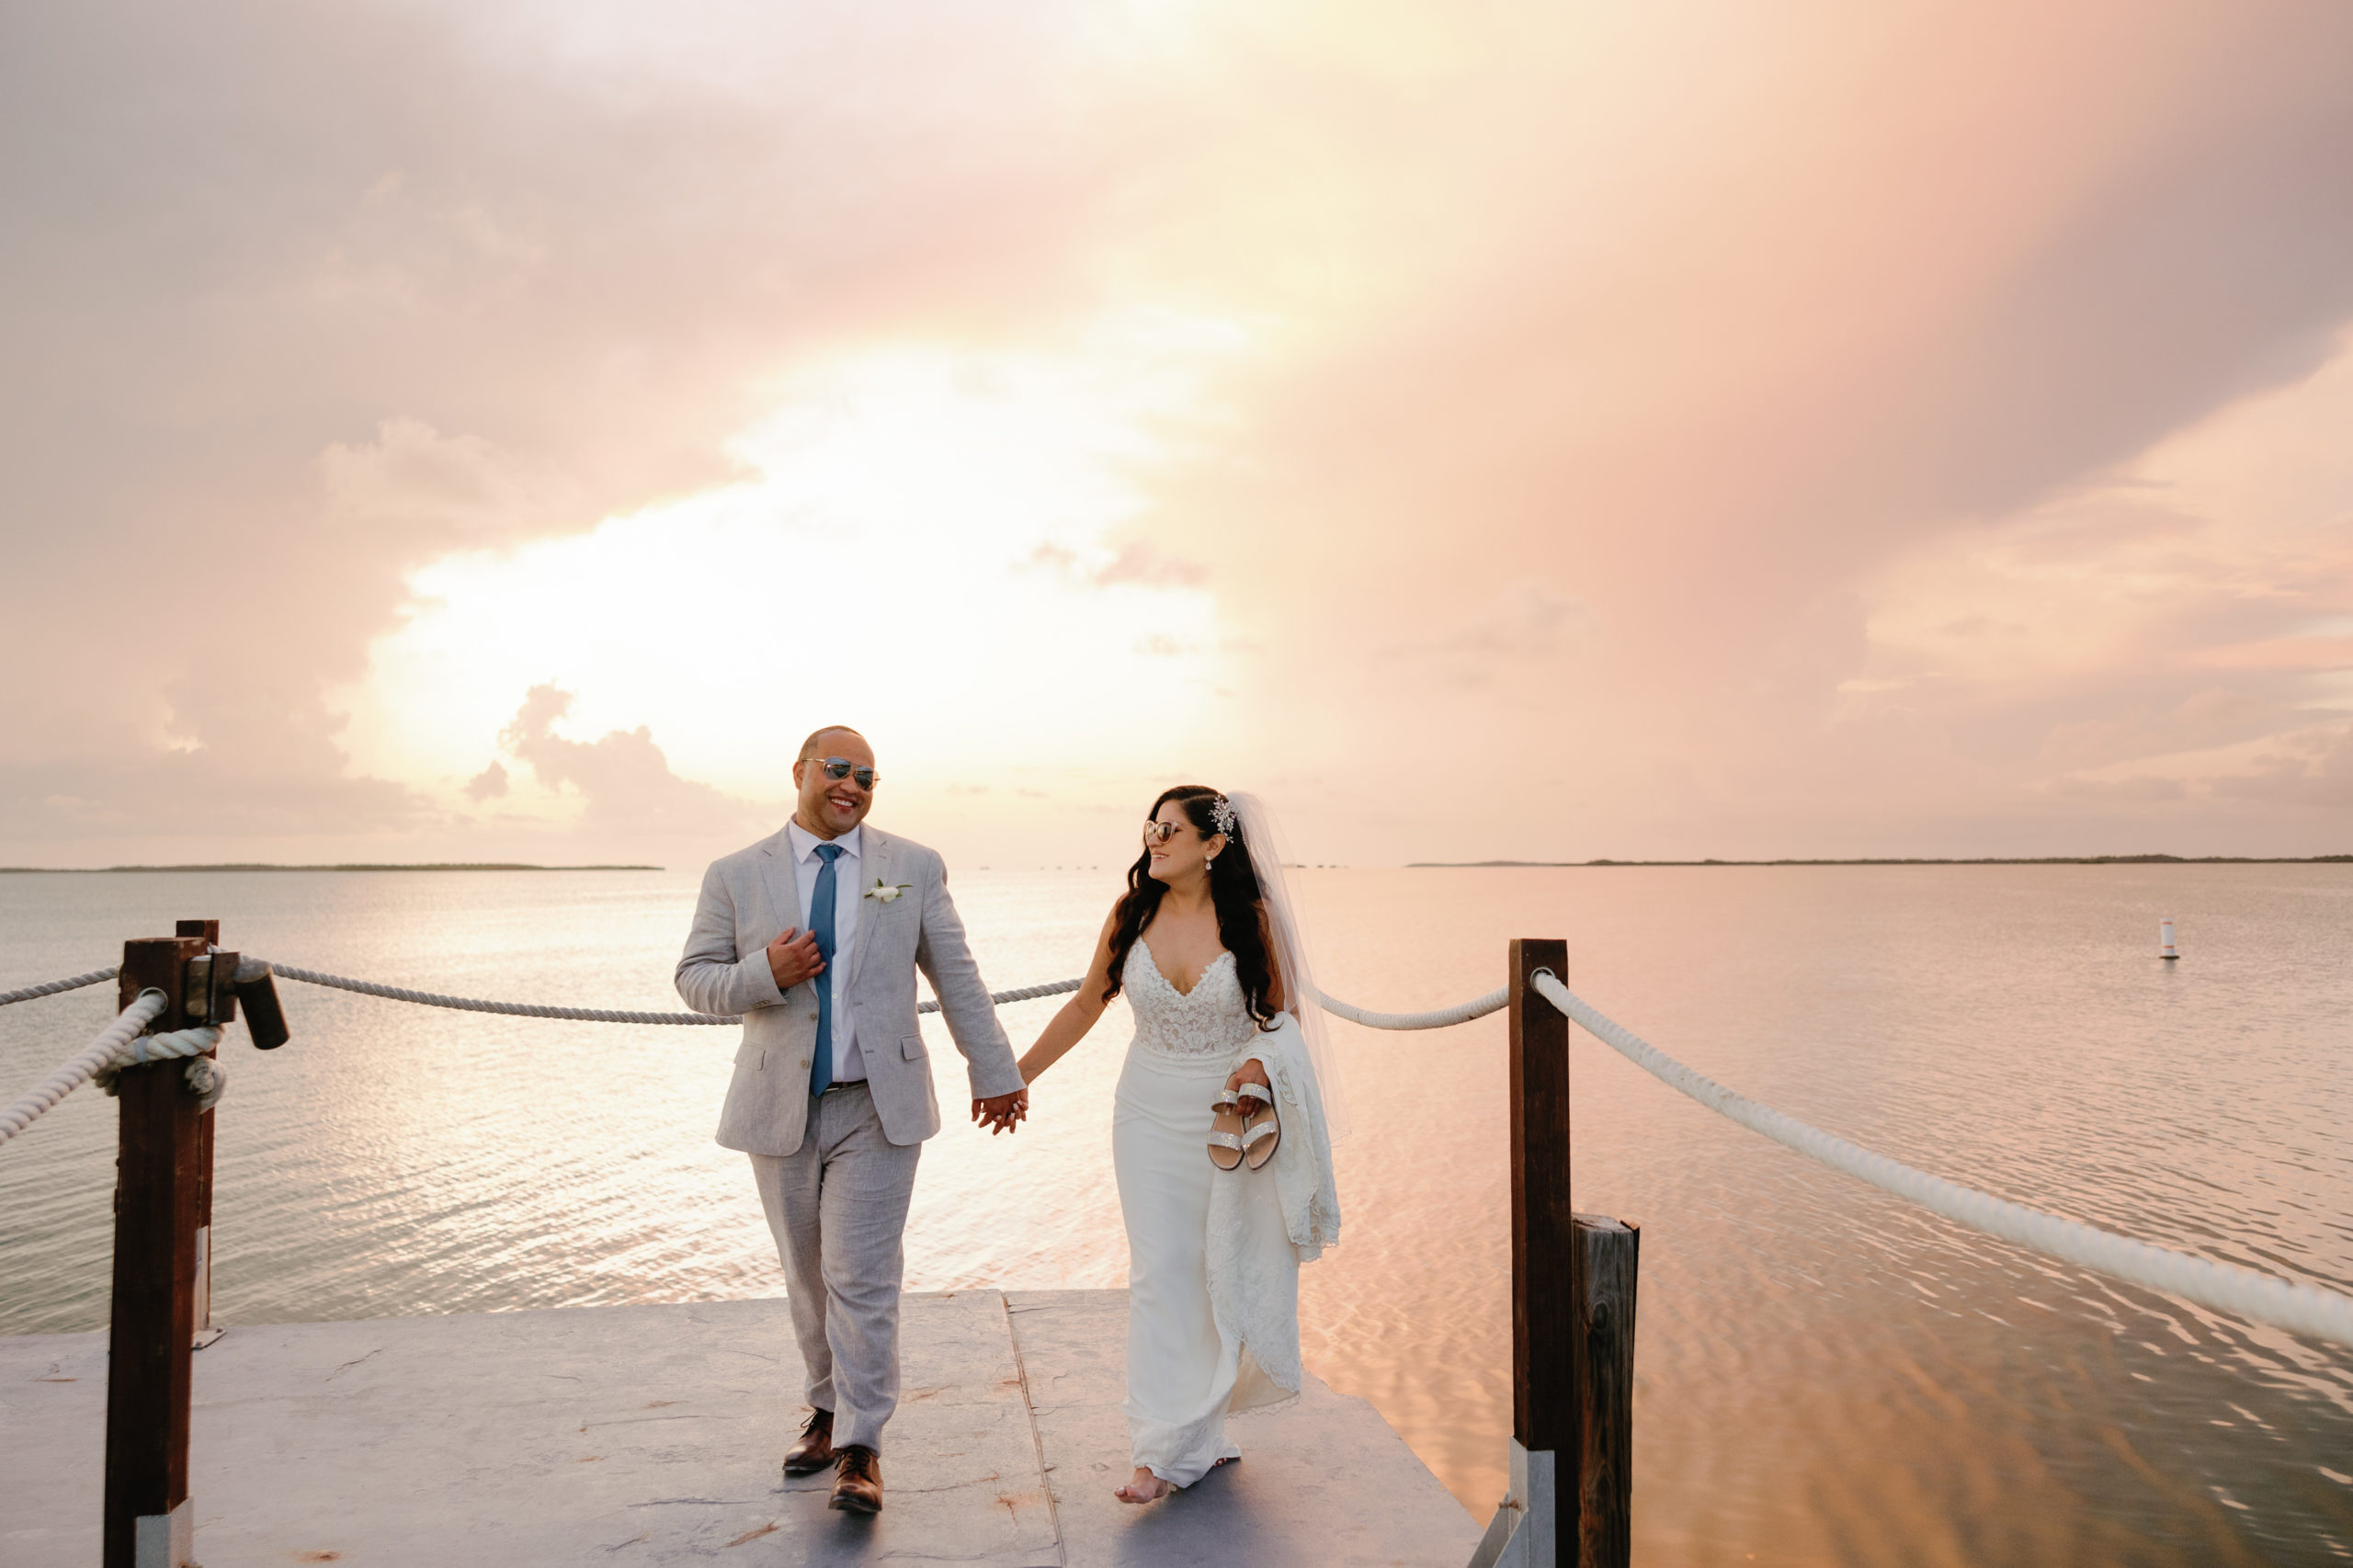 Baker's Cay Wedding, Key Largo Wedding Photographer, Claudia Rios Photography, Baker's Cay Resort Wedding, Key Largo Wedding